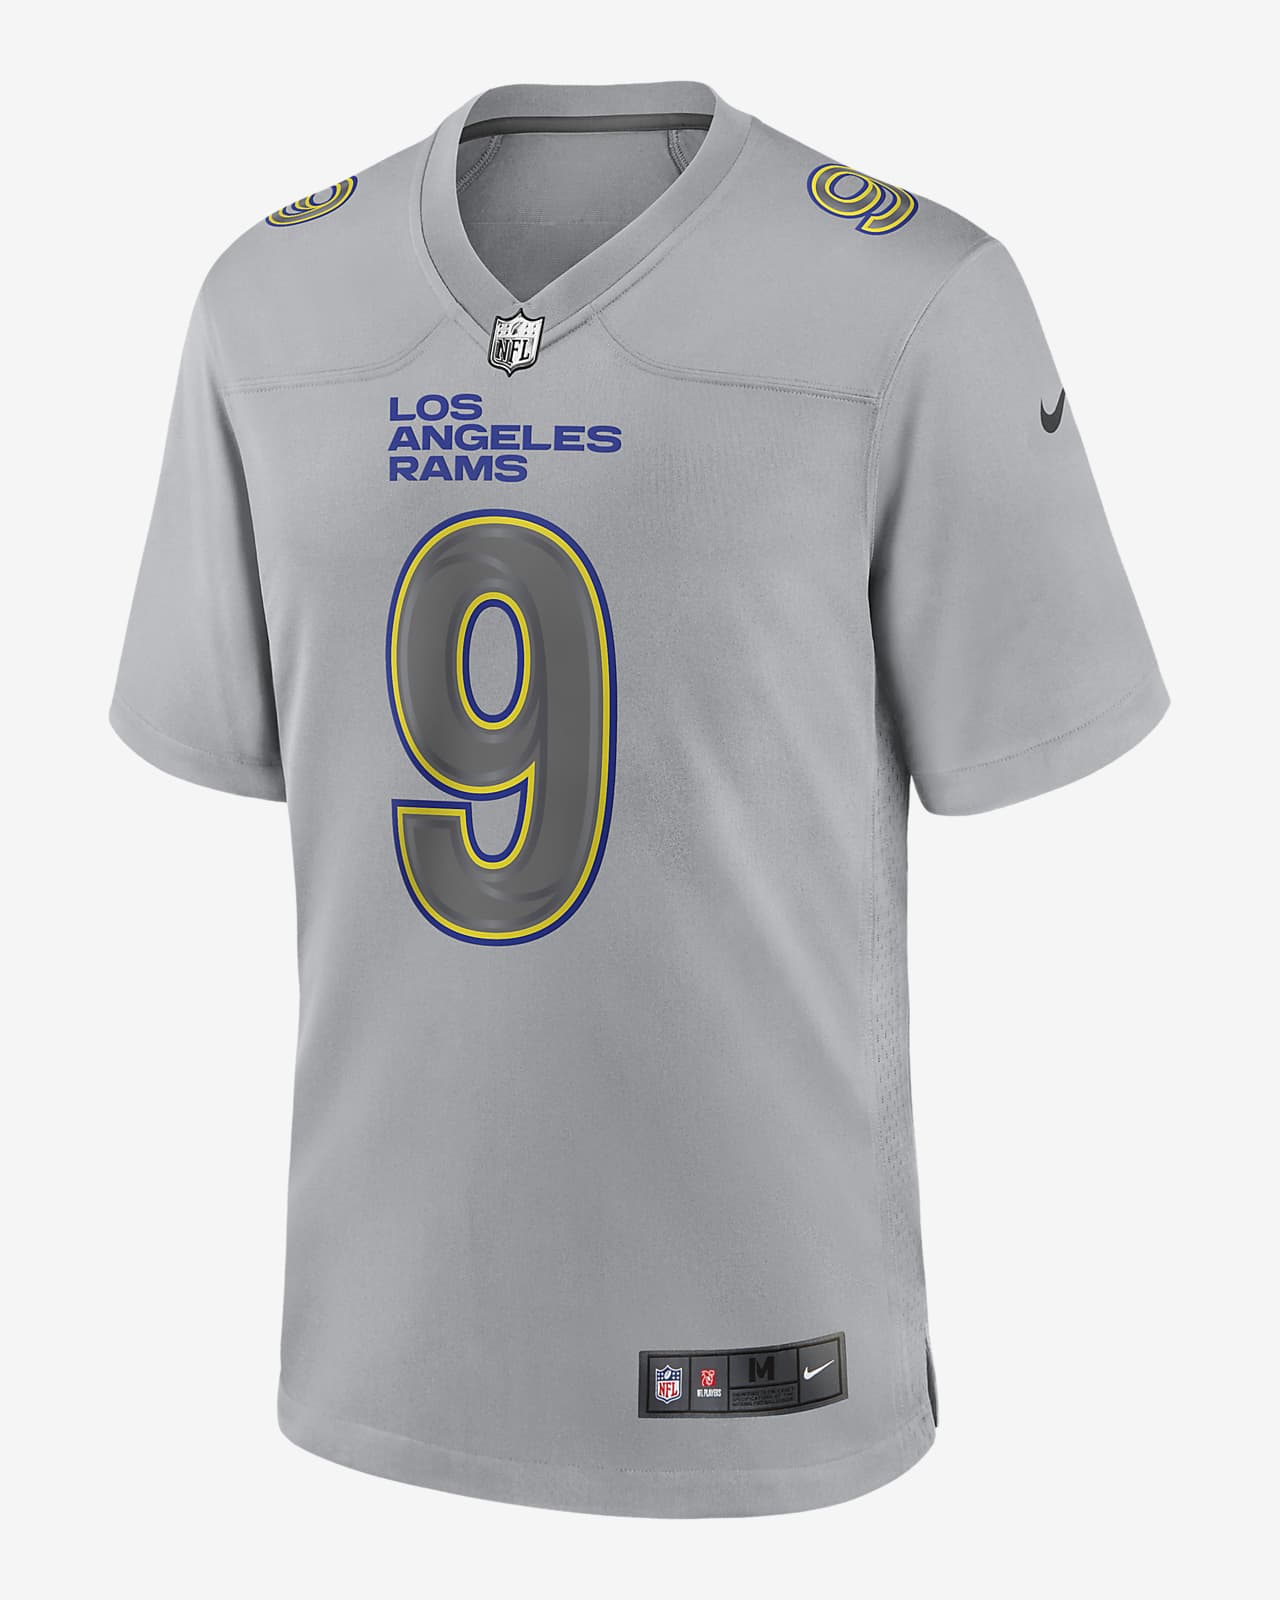 Jersey de fútbol americano Fashion para hombre NFL Atmosphere de Los Angeles Rams (Matthew Stafford)